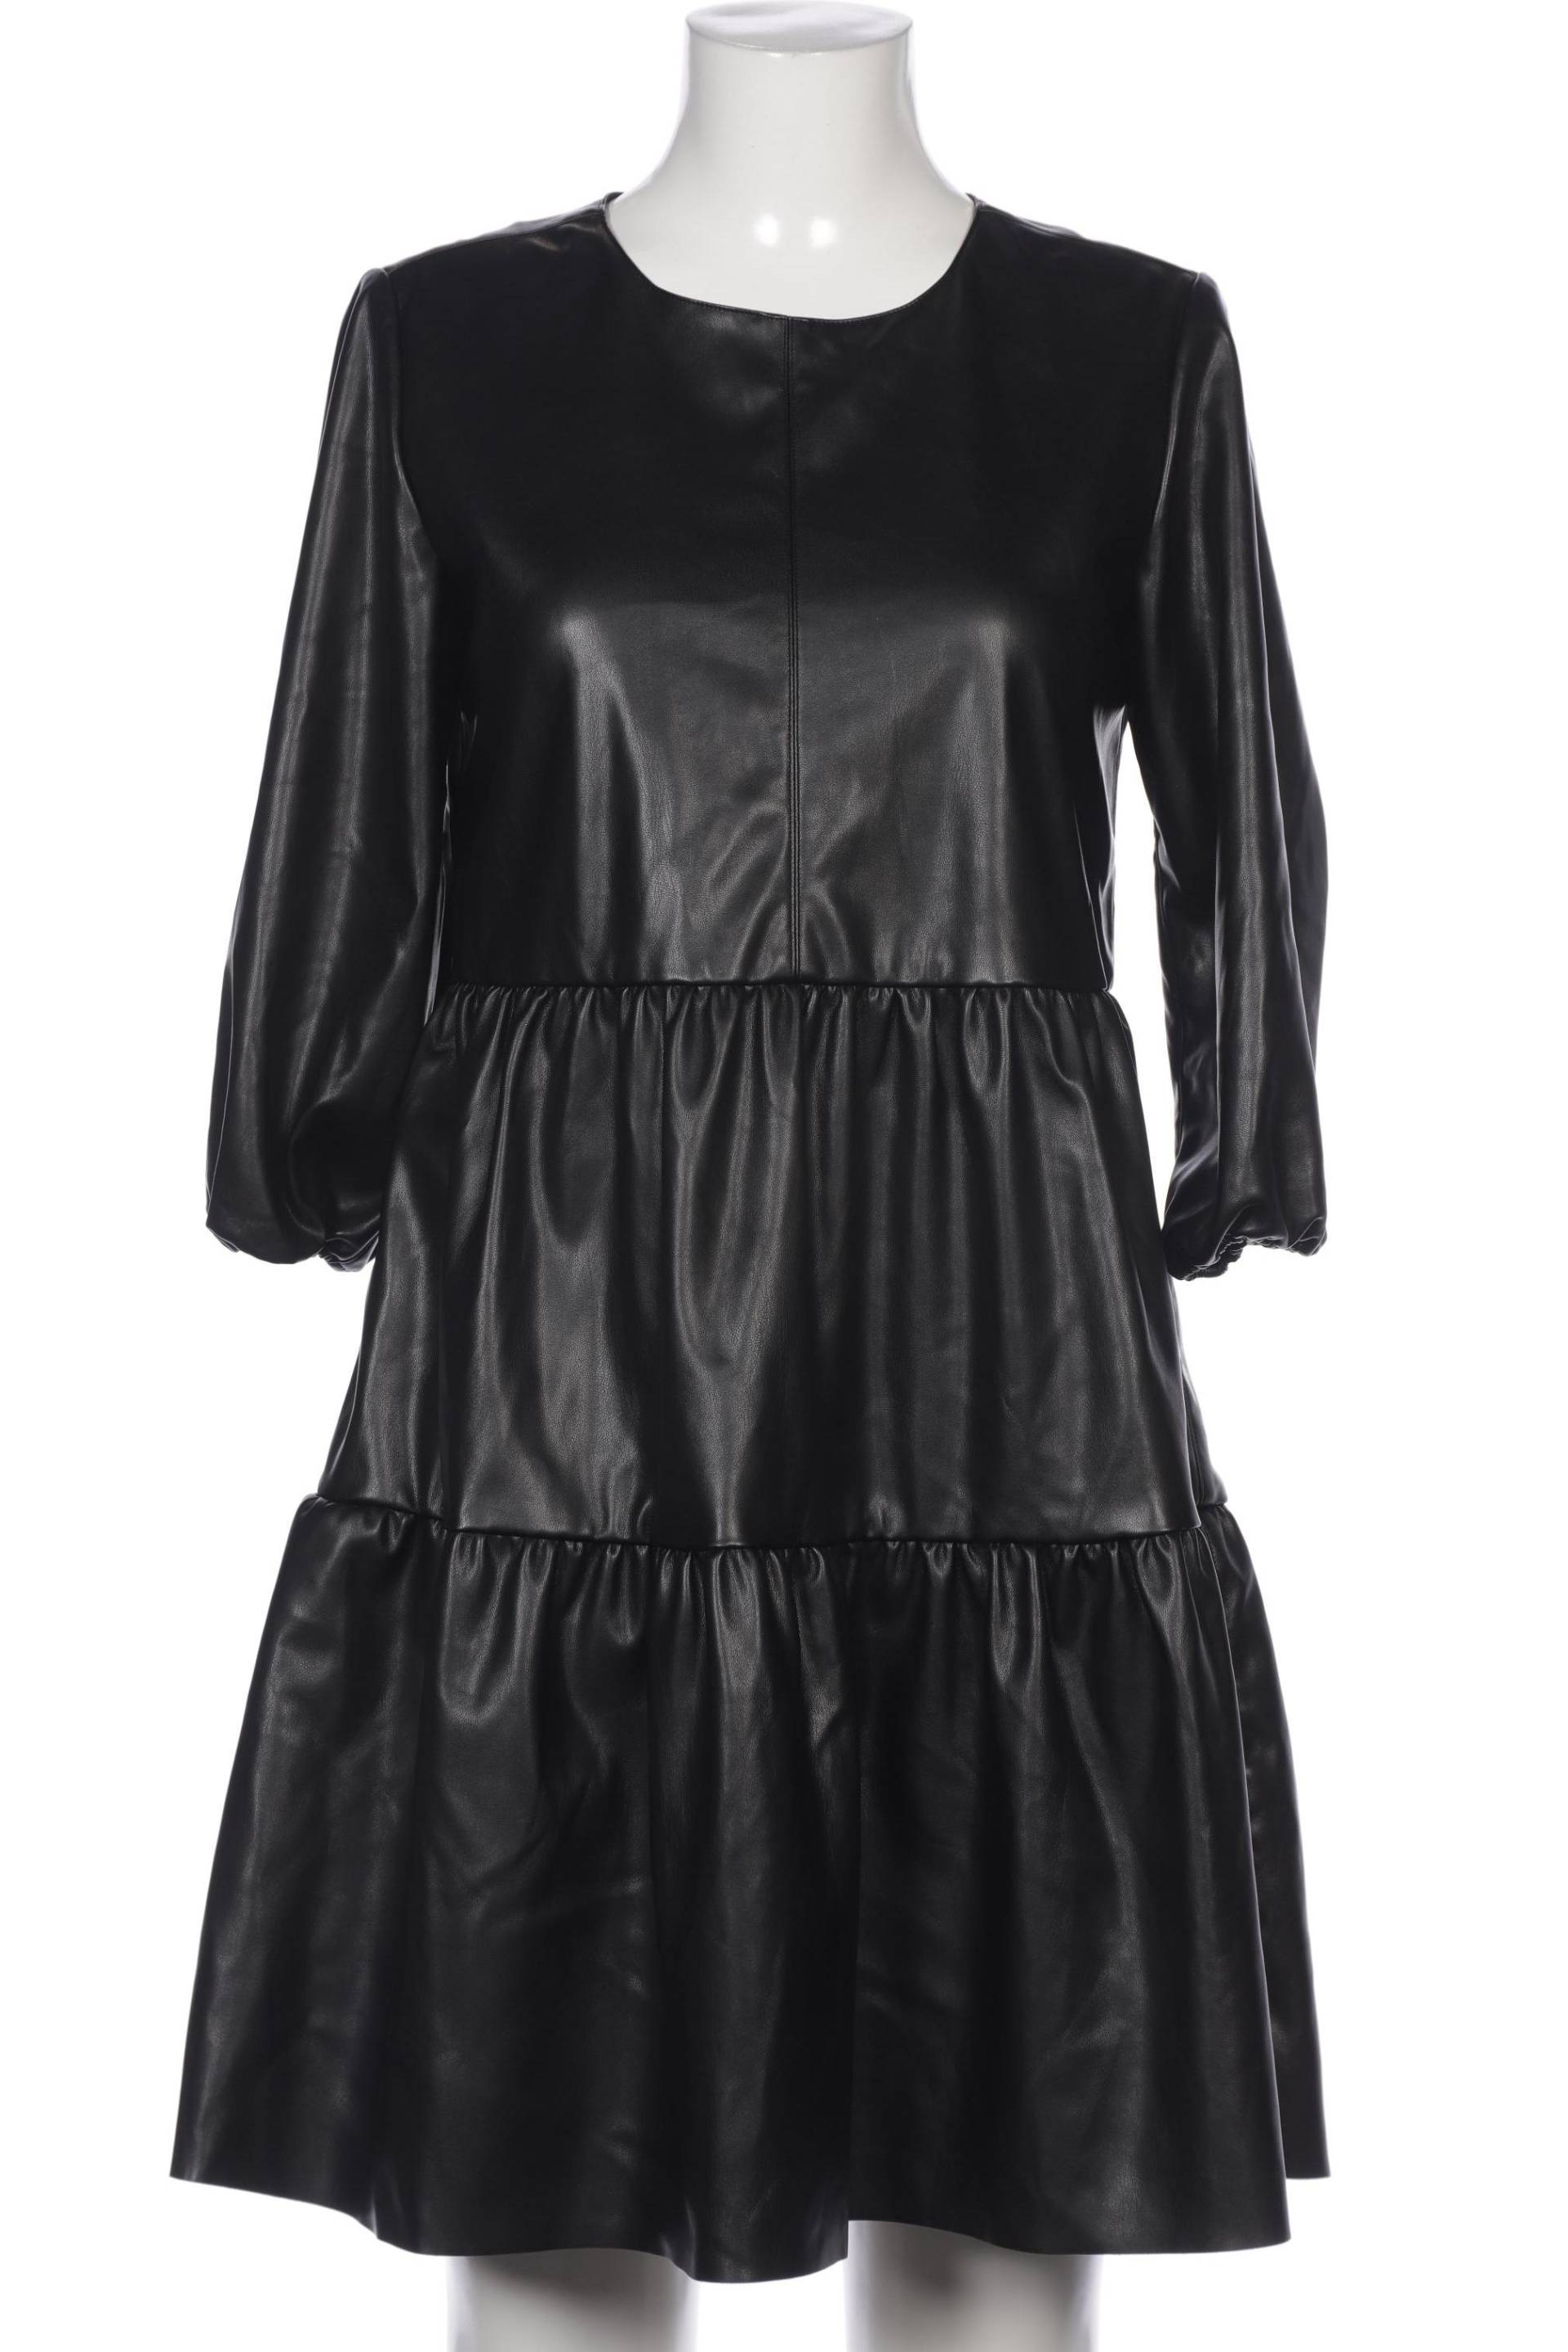 Mrs Hugs Damen Kleid, schwarz, Gr. 36 von Mrs HUGS